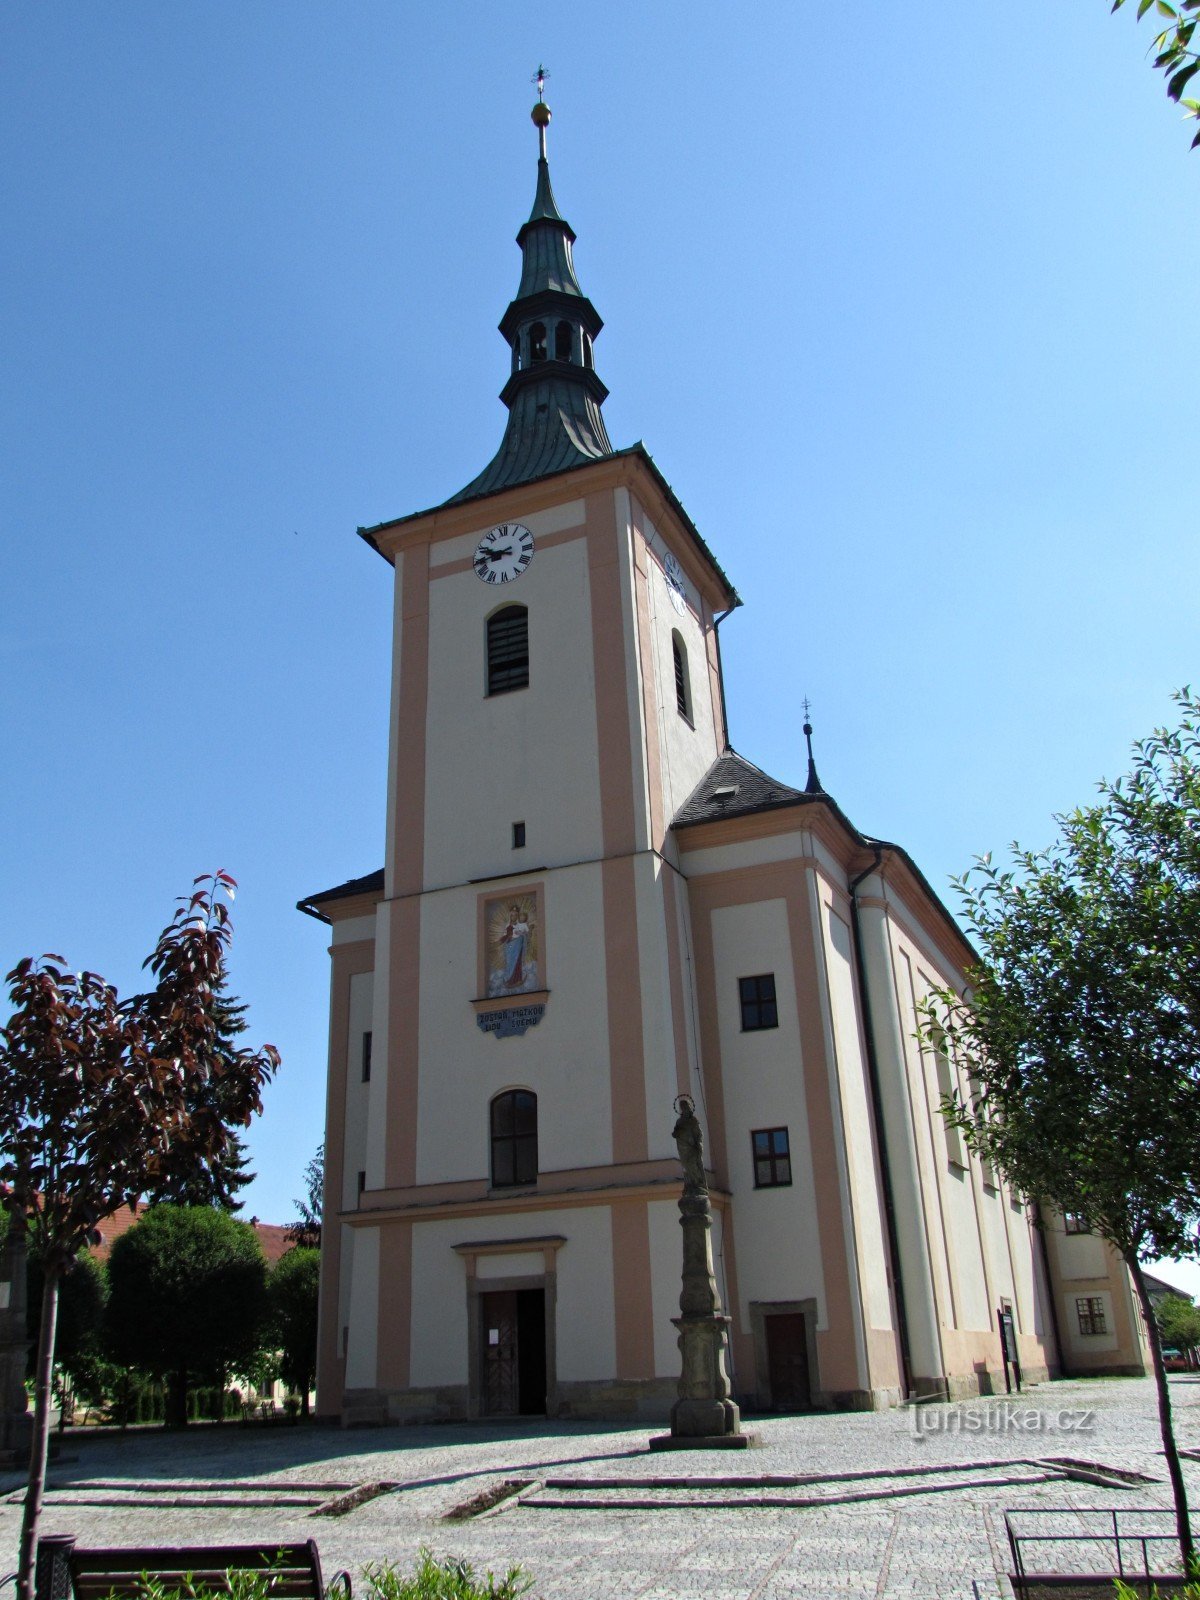 Drahotuše - Szent Lőrinc plébániatemplom